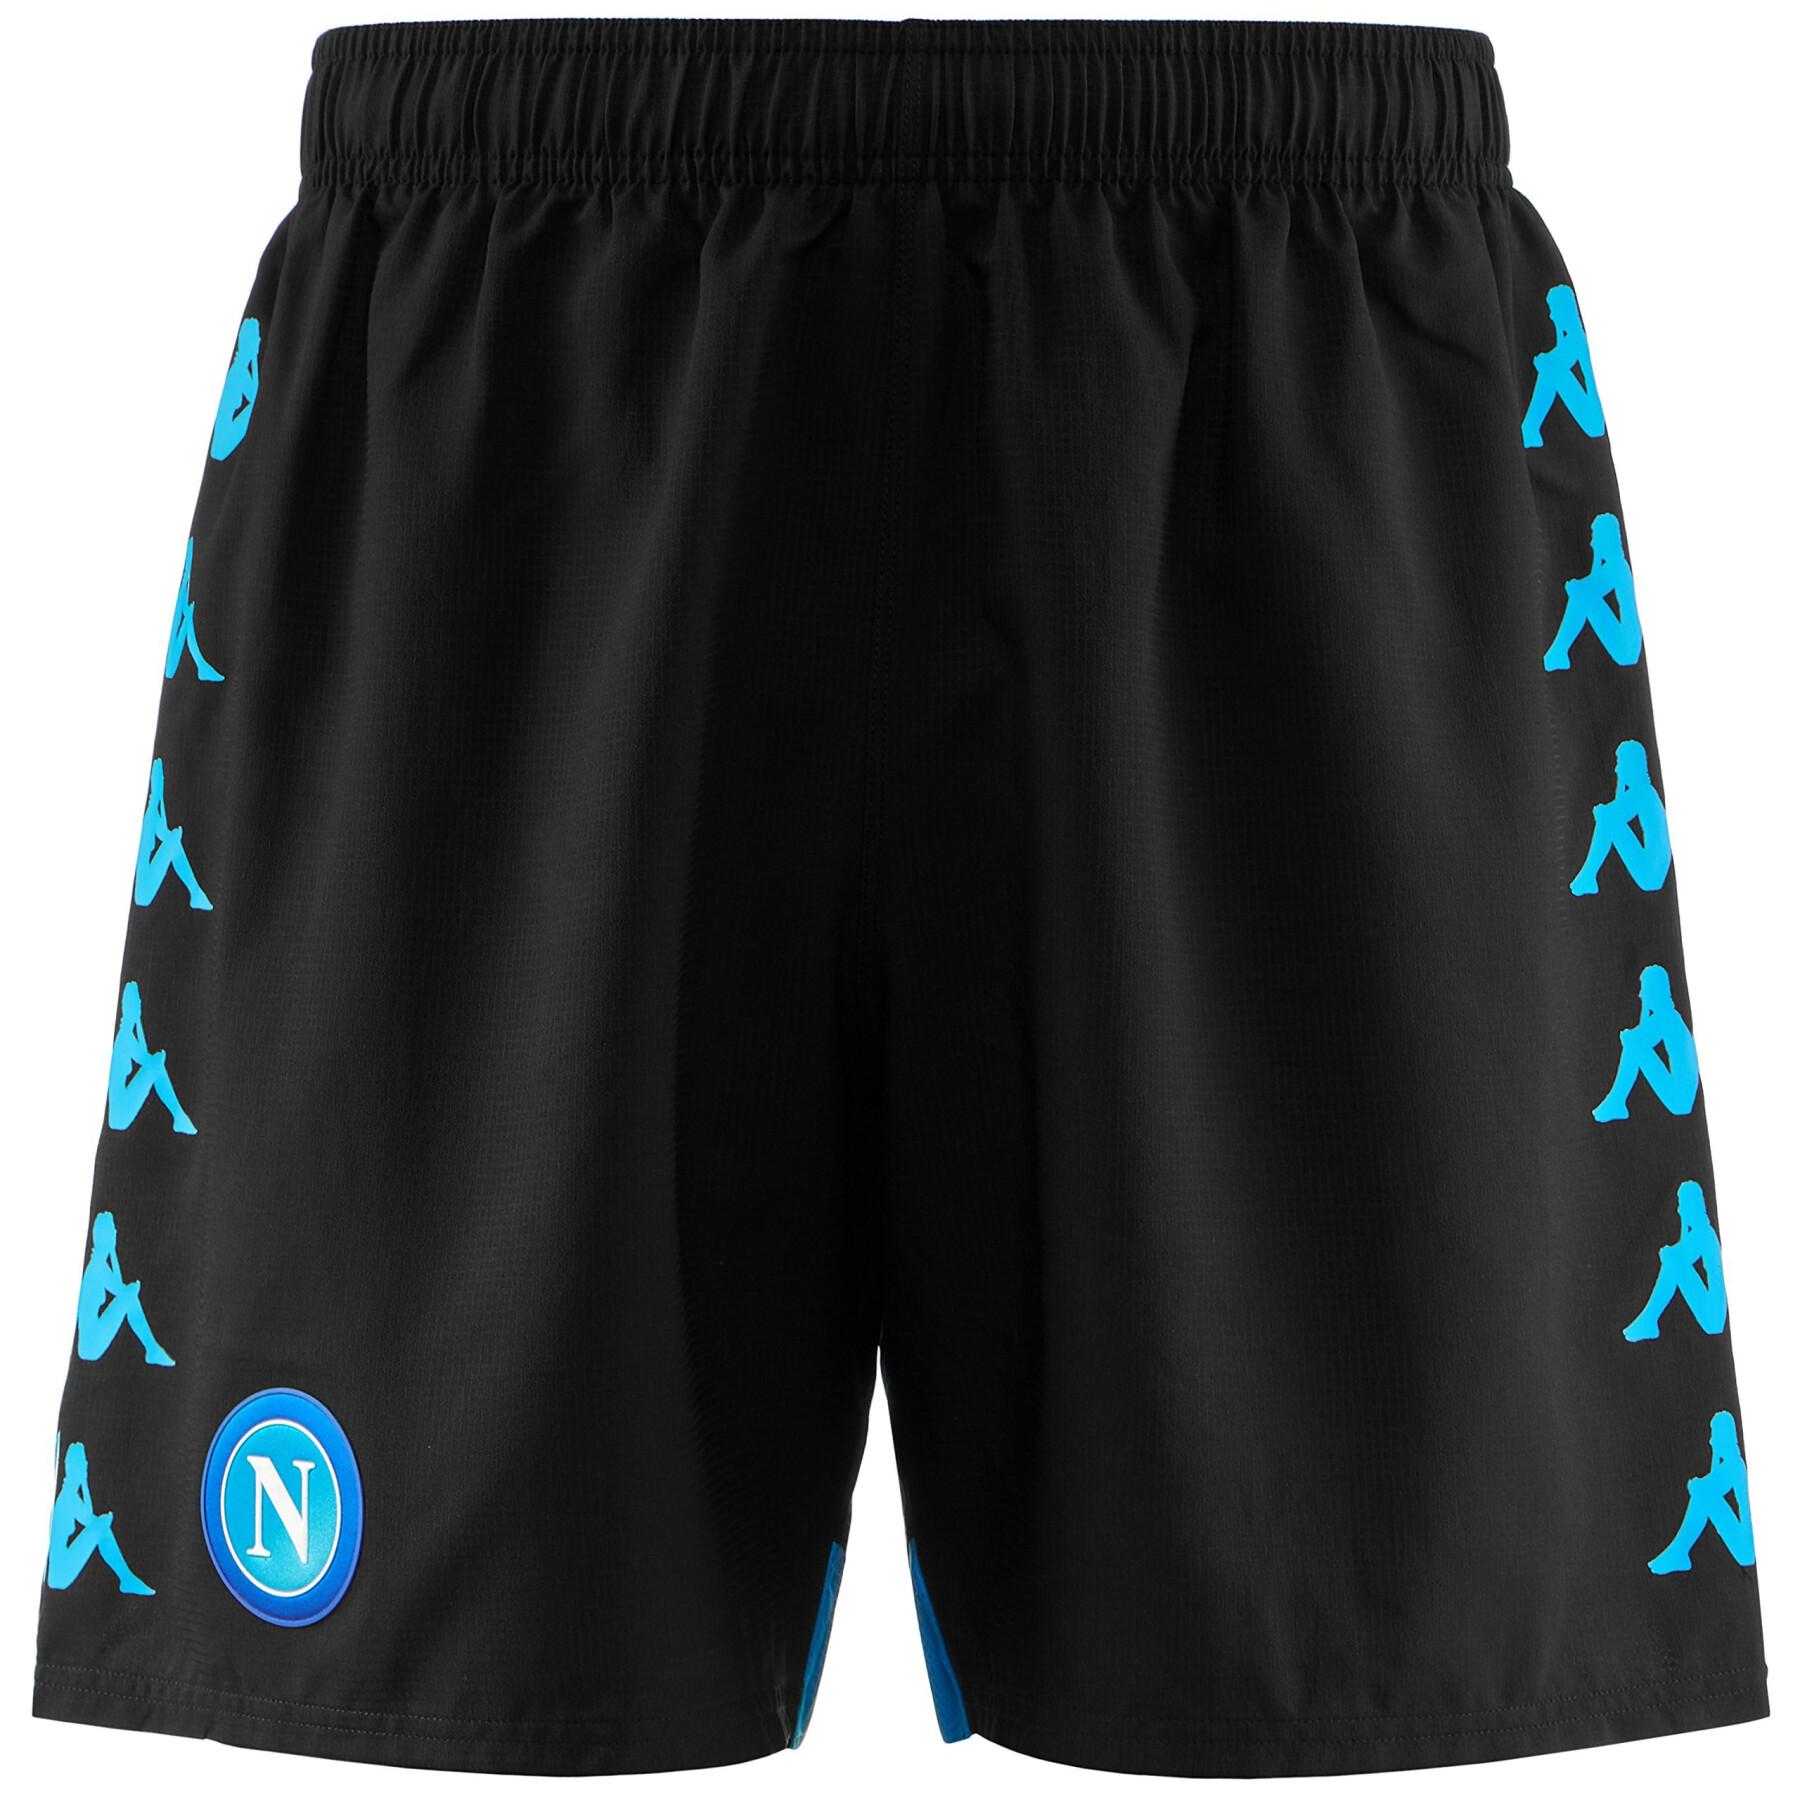 Outdoor-Shorts SSC Napoli 2018/19